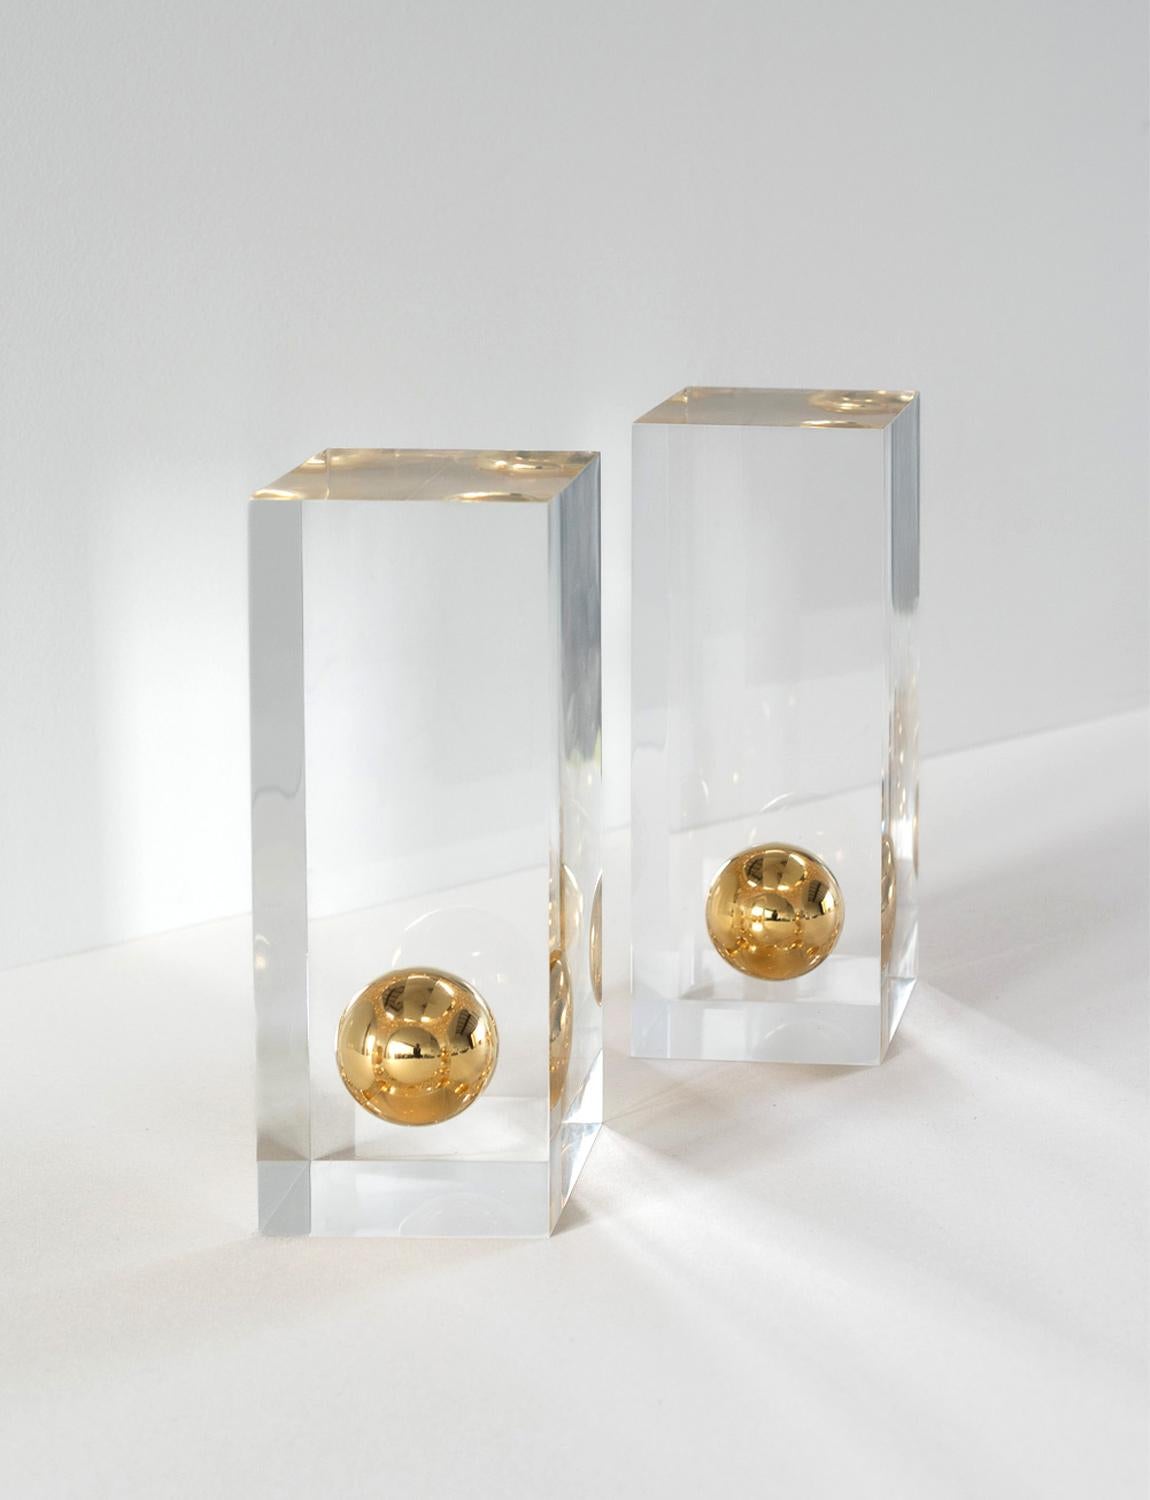 Ein wunderschönes Paar Plexiglasornamente, entworfen von Willy Rizzo (1928 -2013) für Metal Art in den 1970er Jahren. In jedem Ornament befindet sich eine hängende Goldkugel. Sie können als reine Dekorationsstücke oder als Buchstützen verwendet